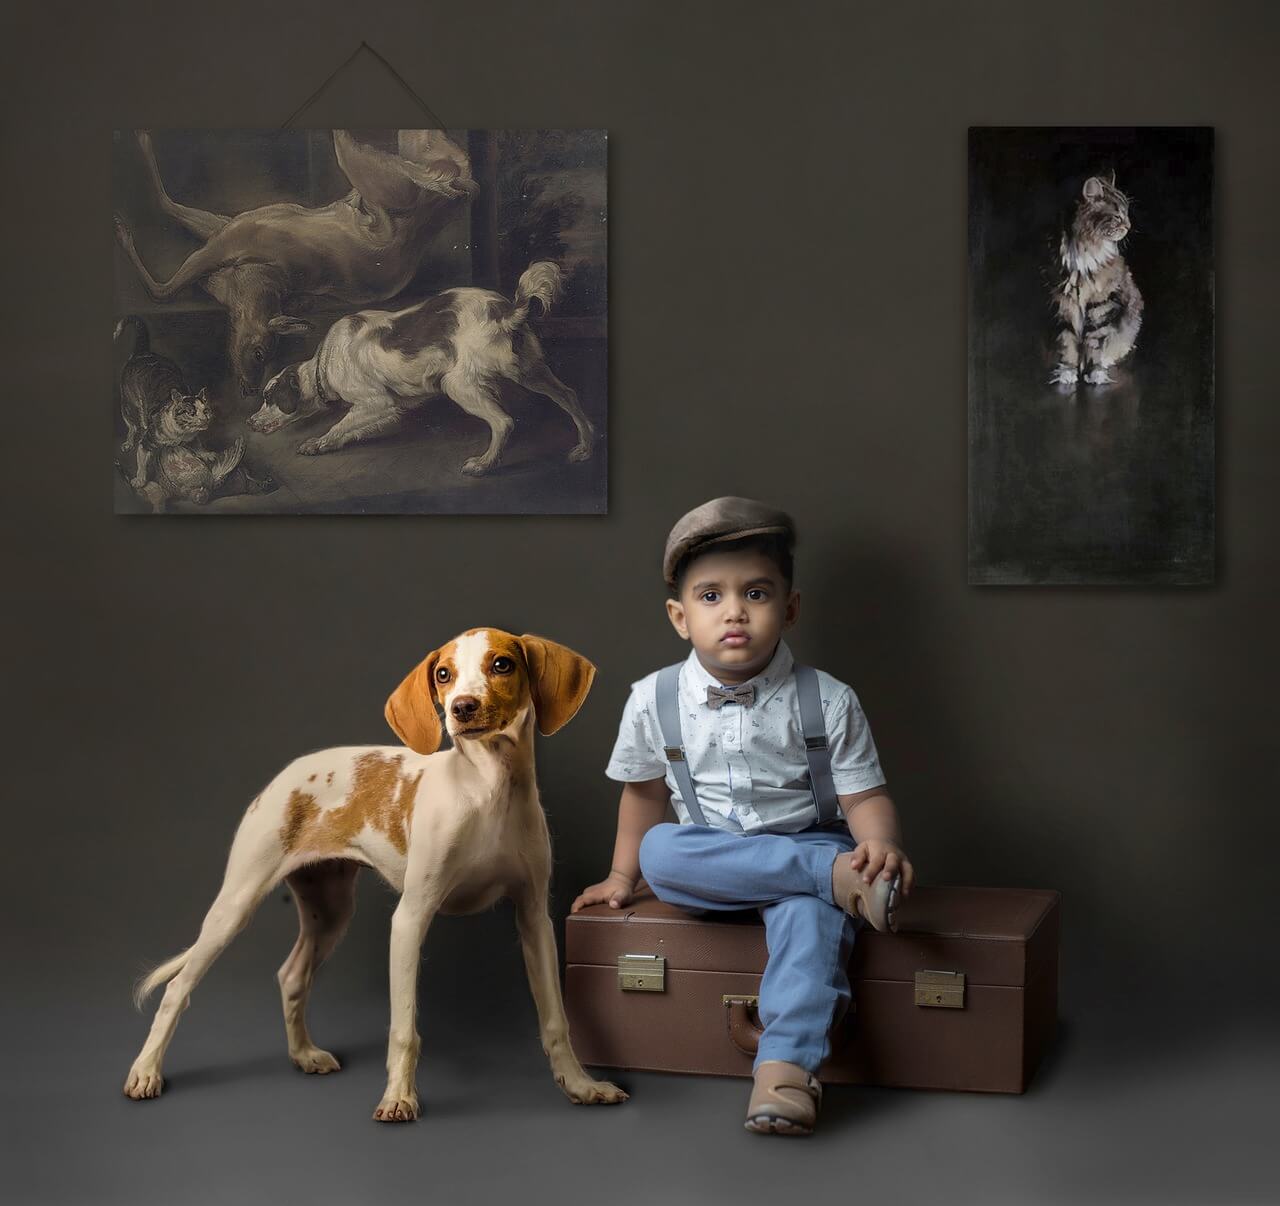 Niño sentado en una maleta acompañado de un perro con fondo oscuro y cuadros de animales.